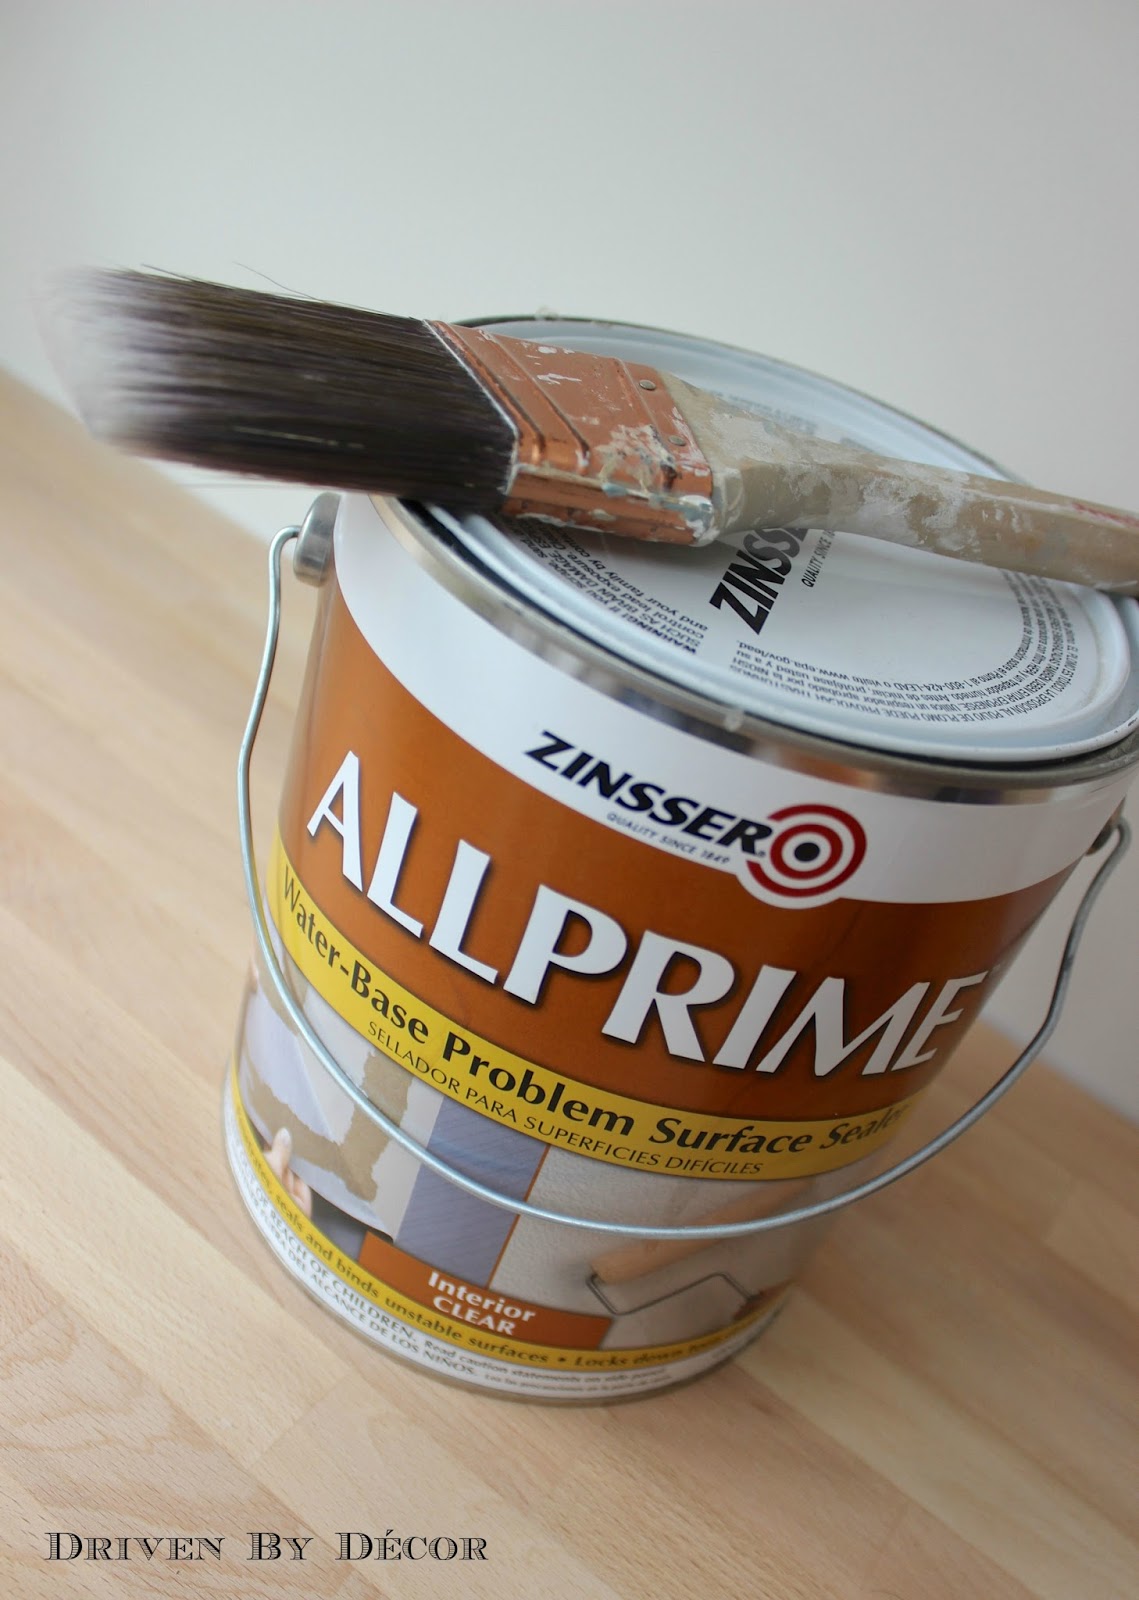 Wallpaper Paste, Adhesives, Glues, & Liquid